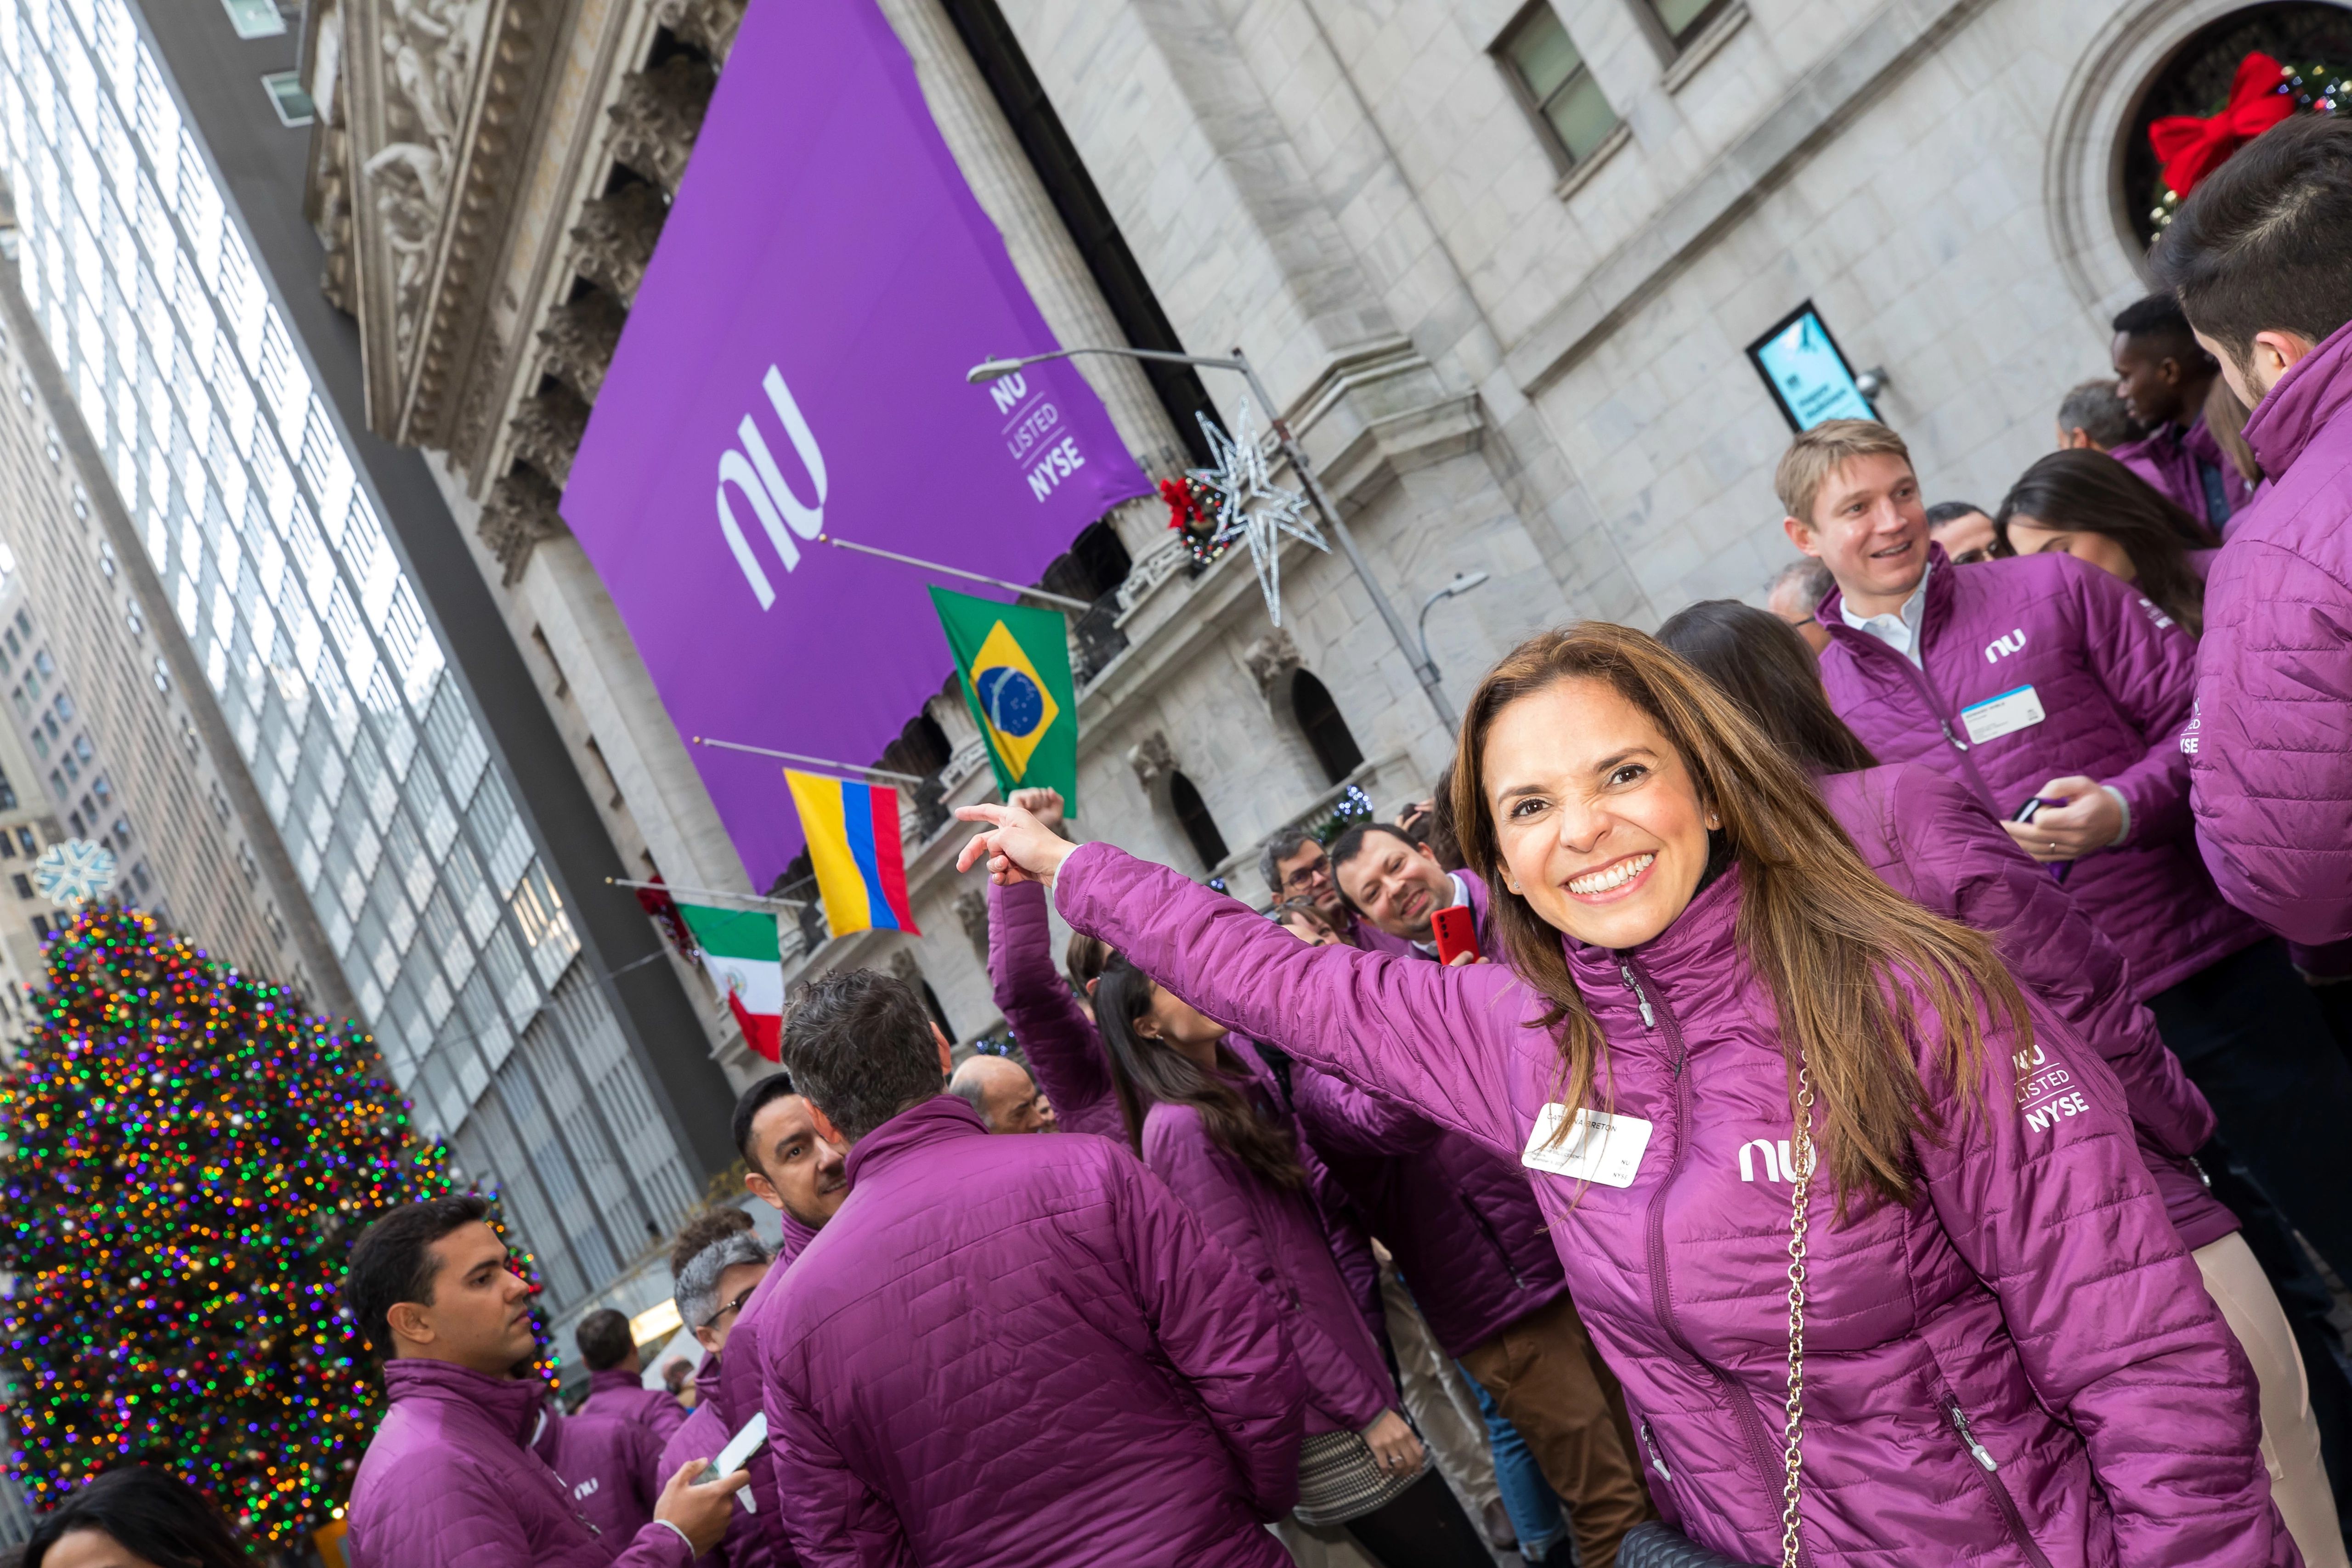 Nubank celebrates its NYSE listing